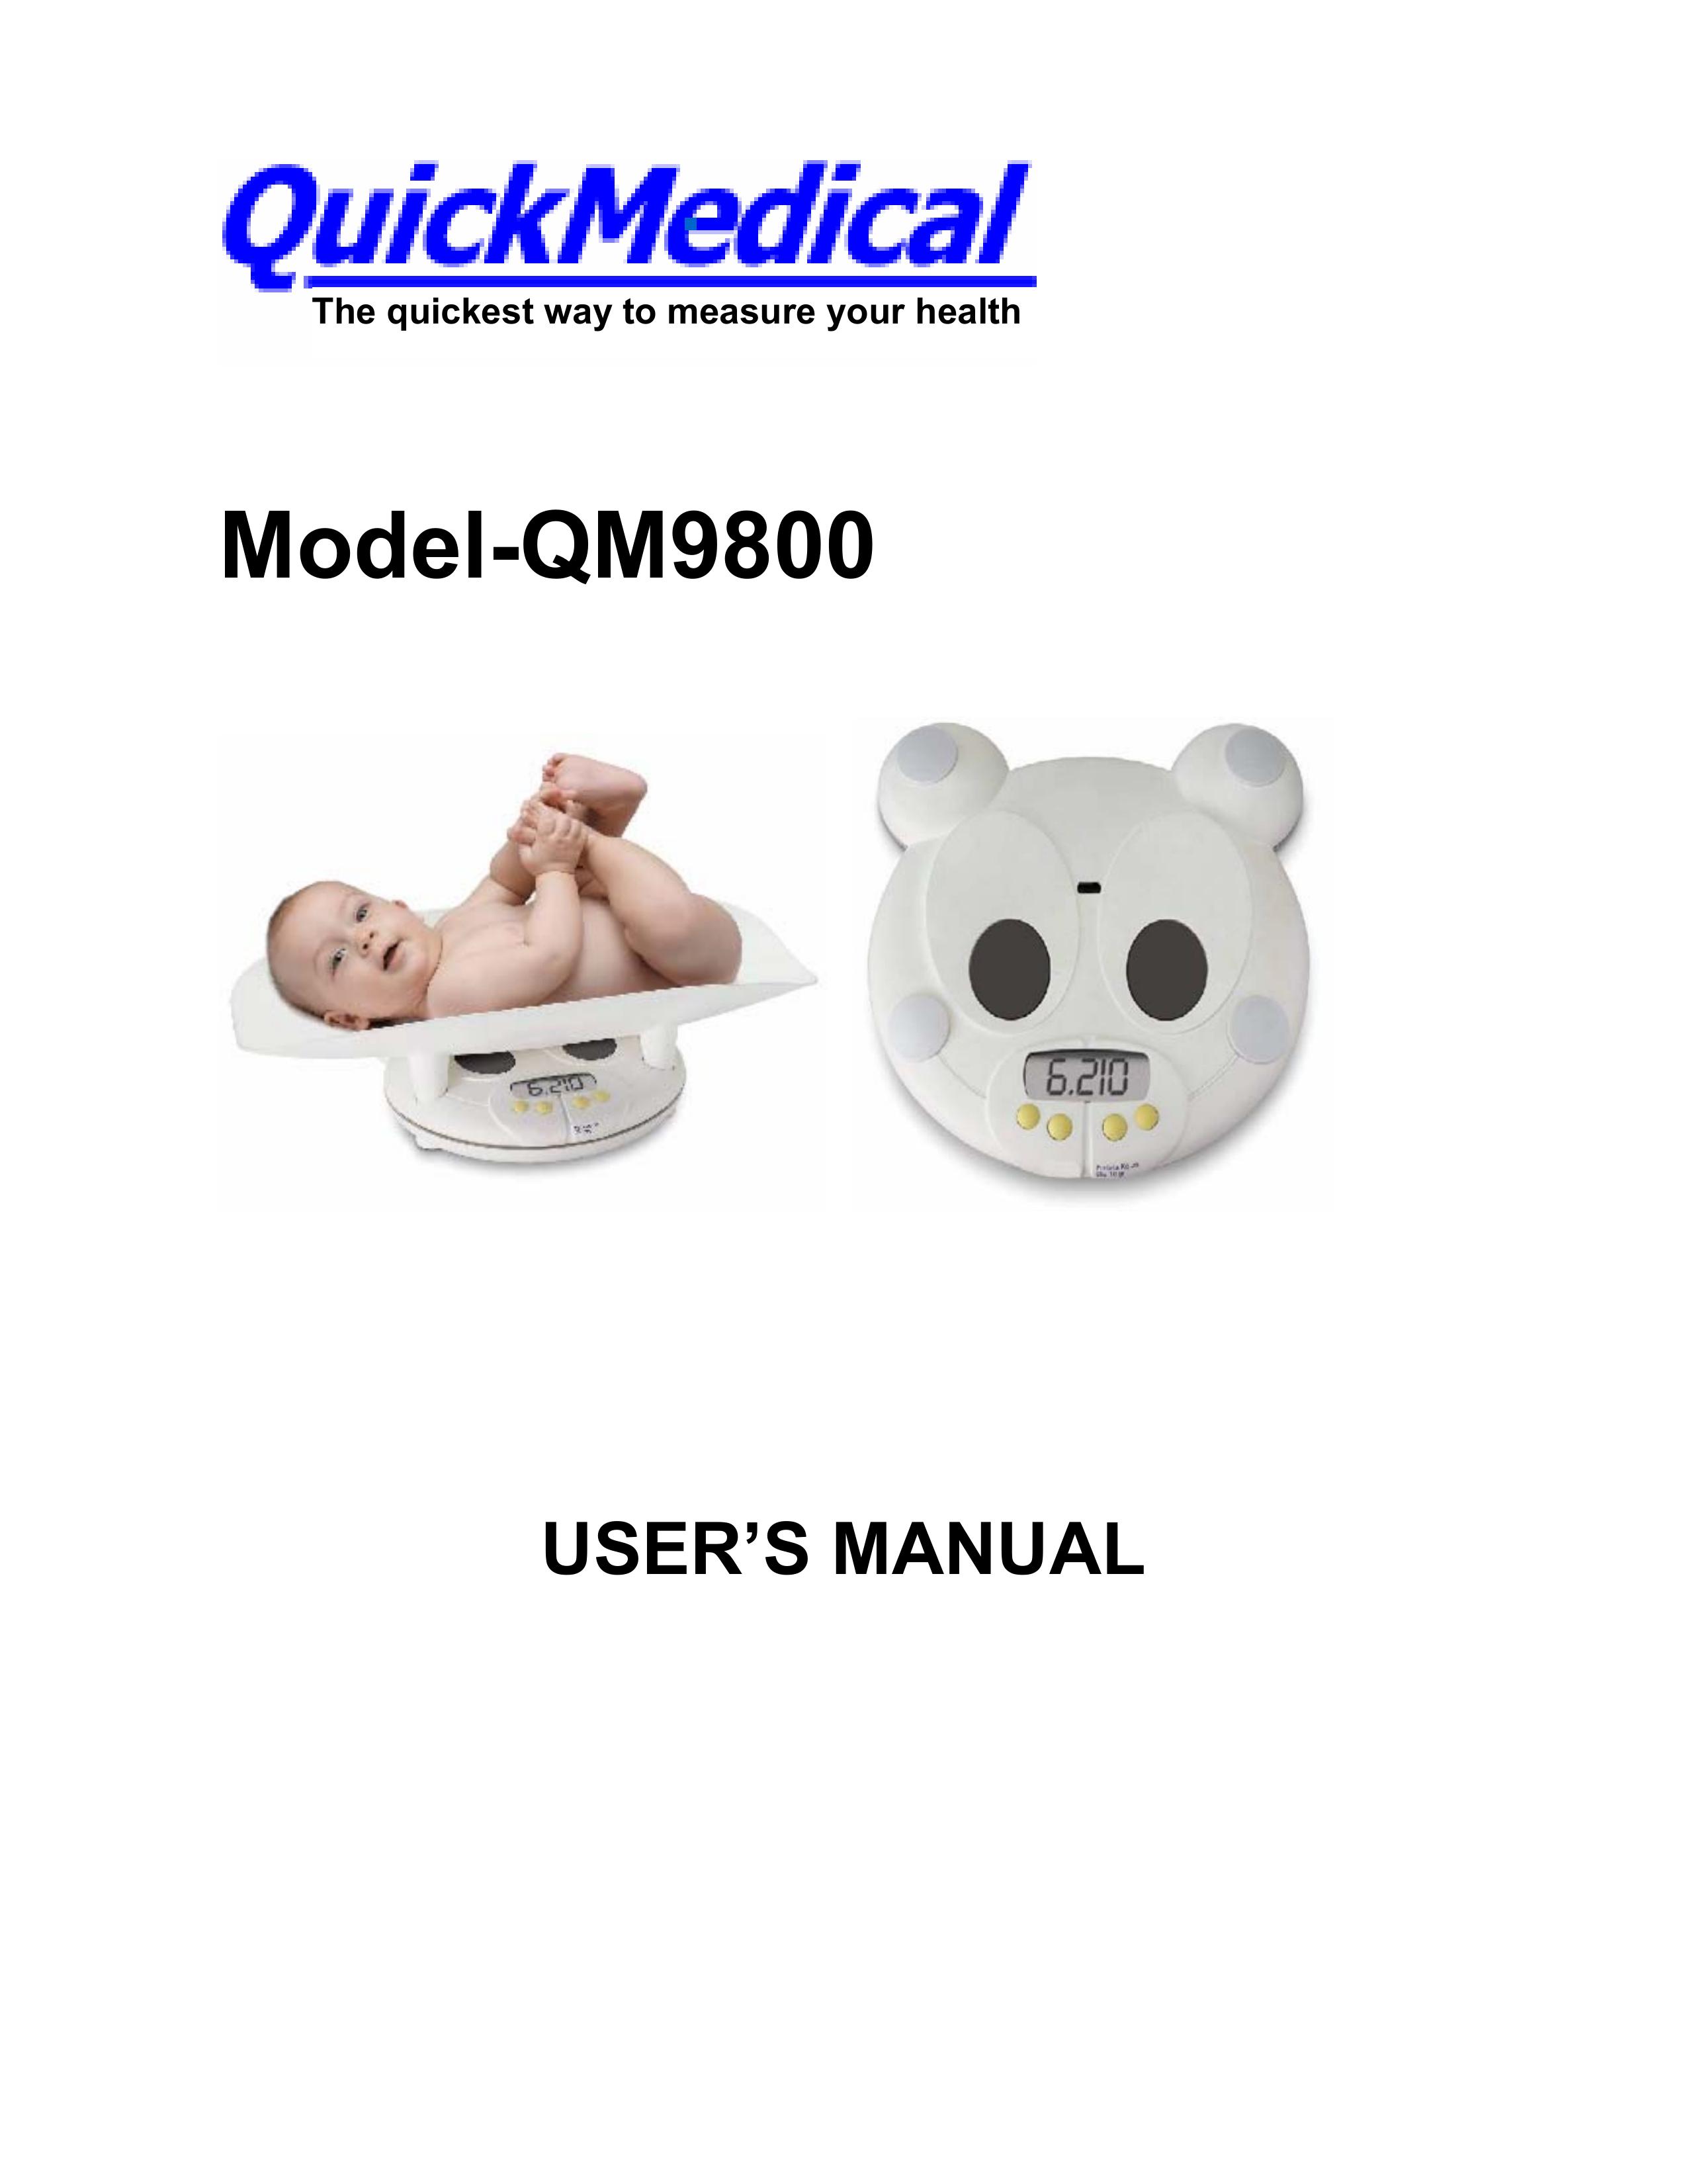 LG Electronics QM9800 Scale User Manual